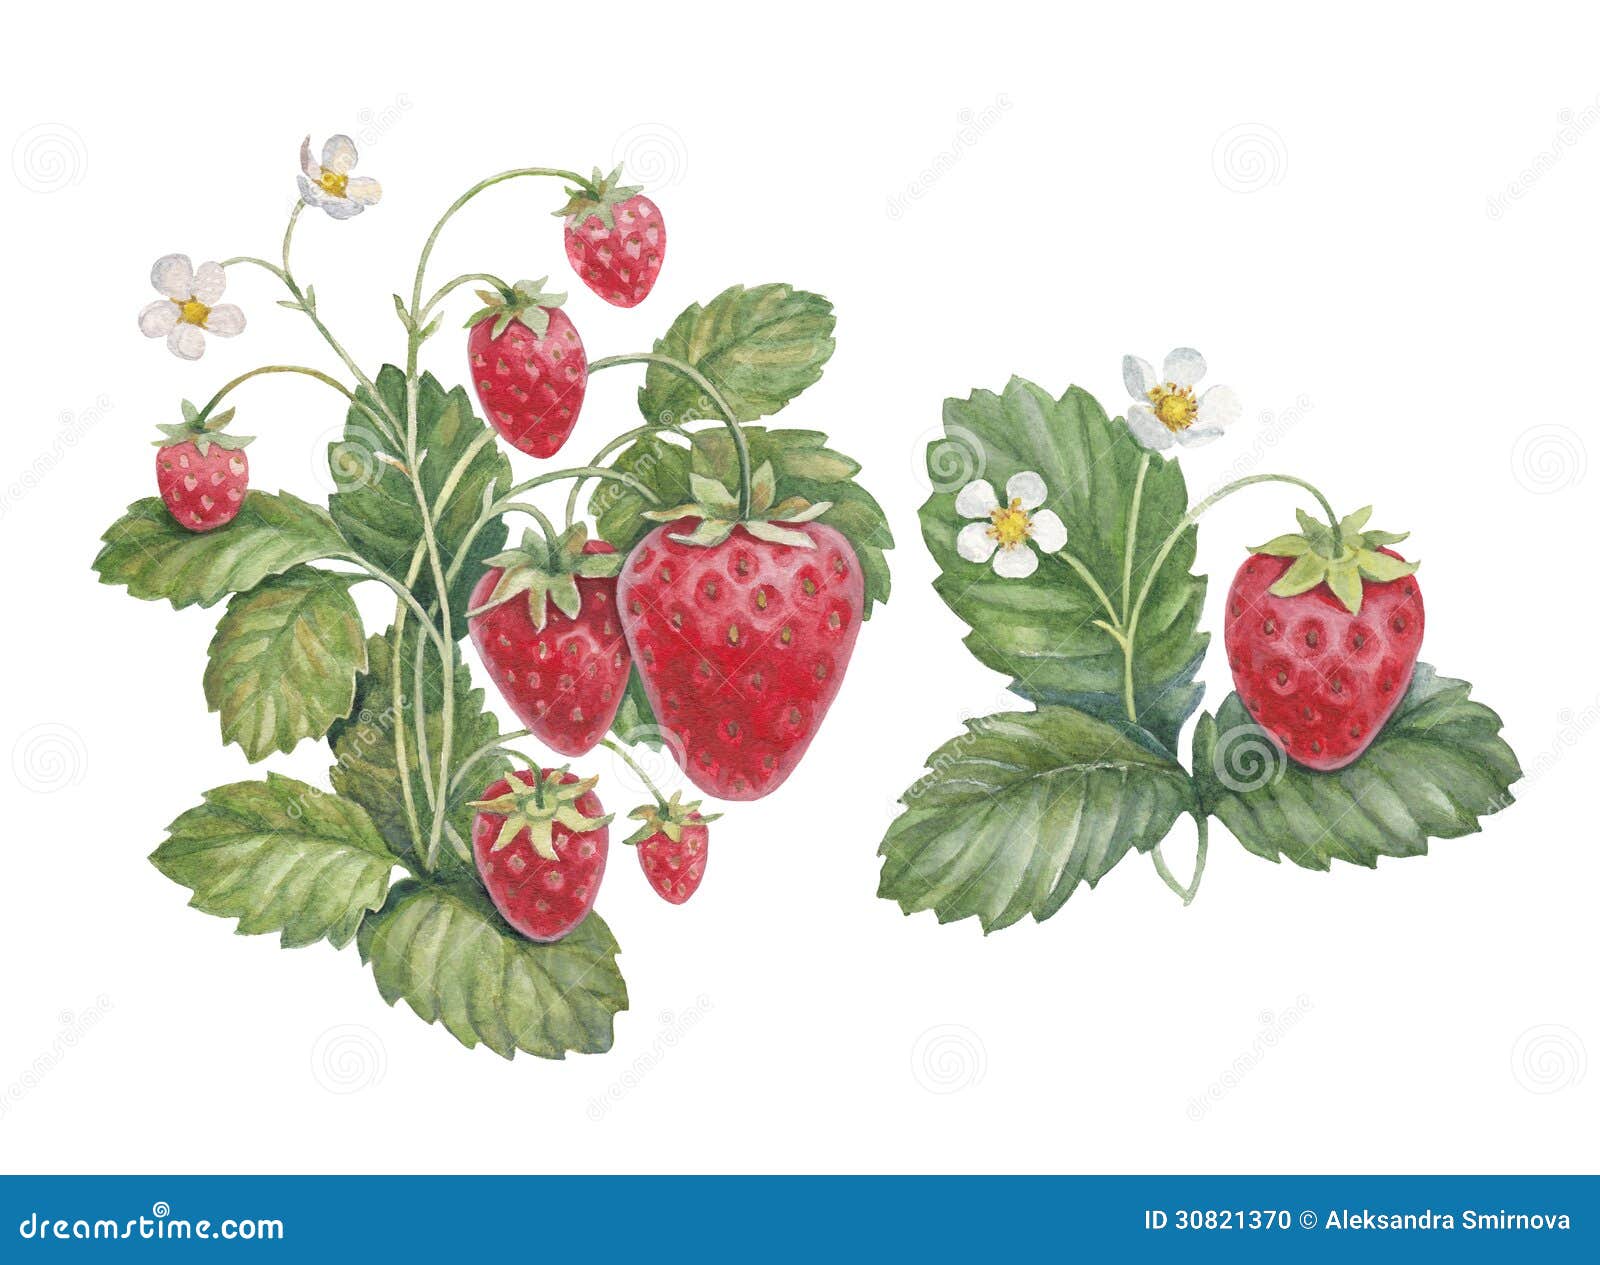 watercolor strawberry bush